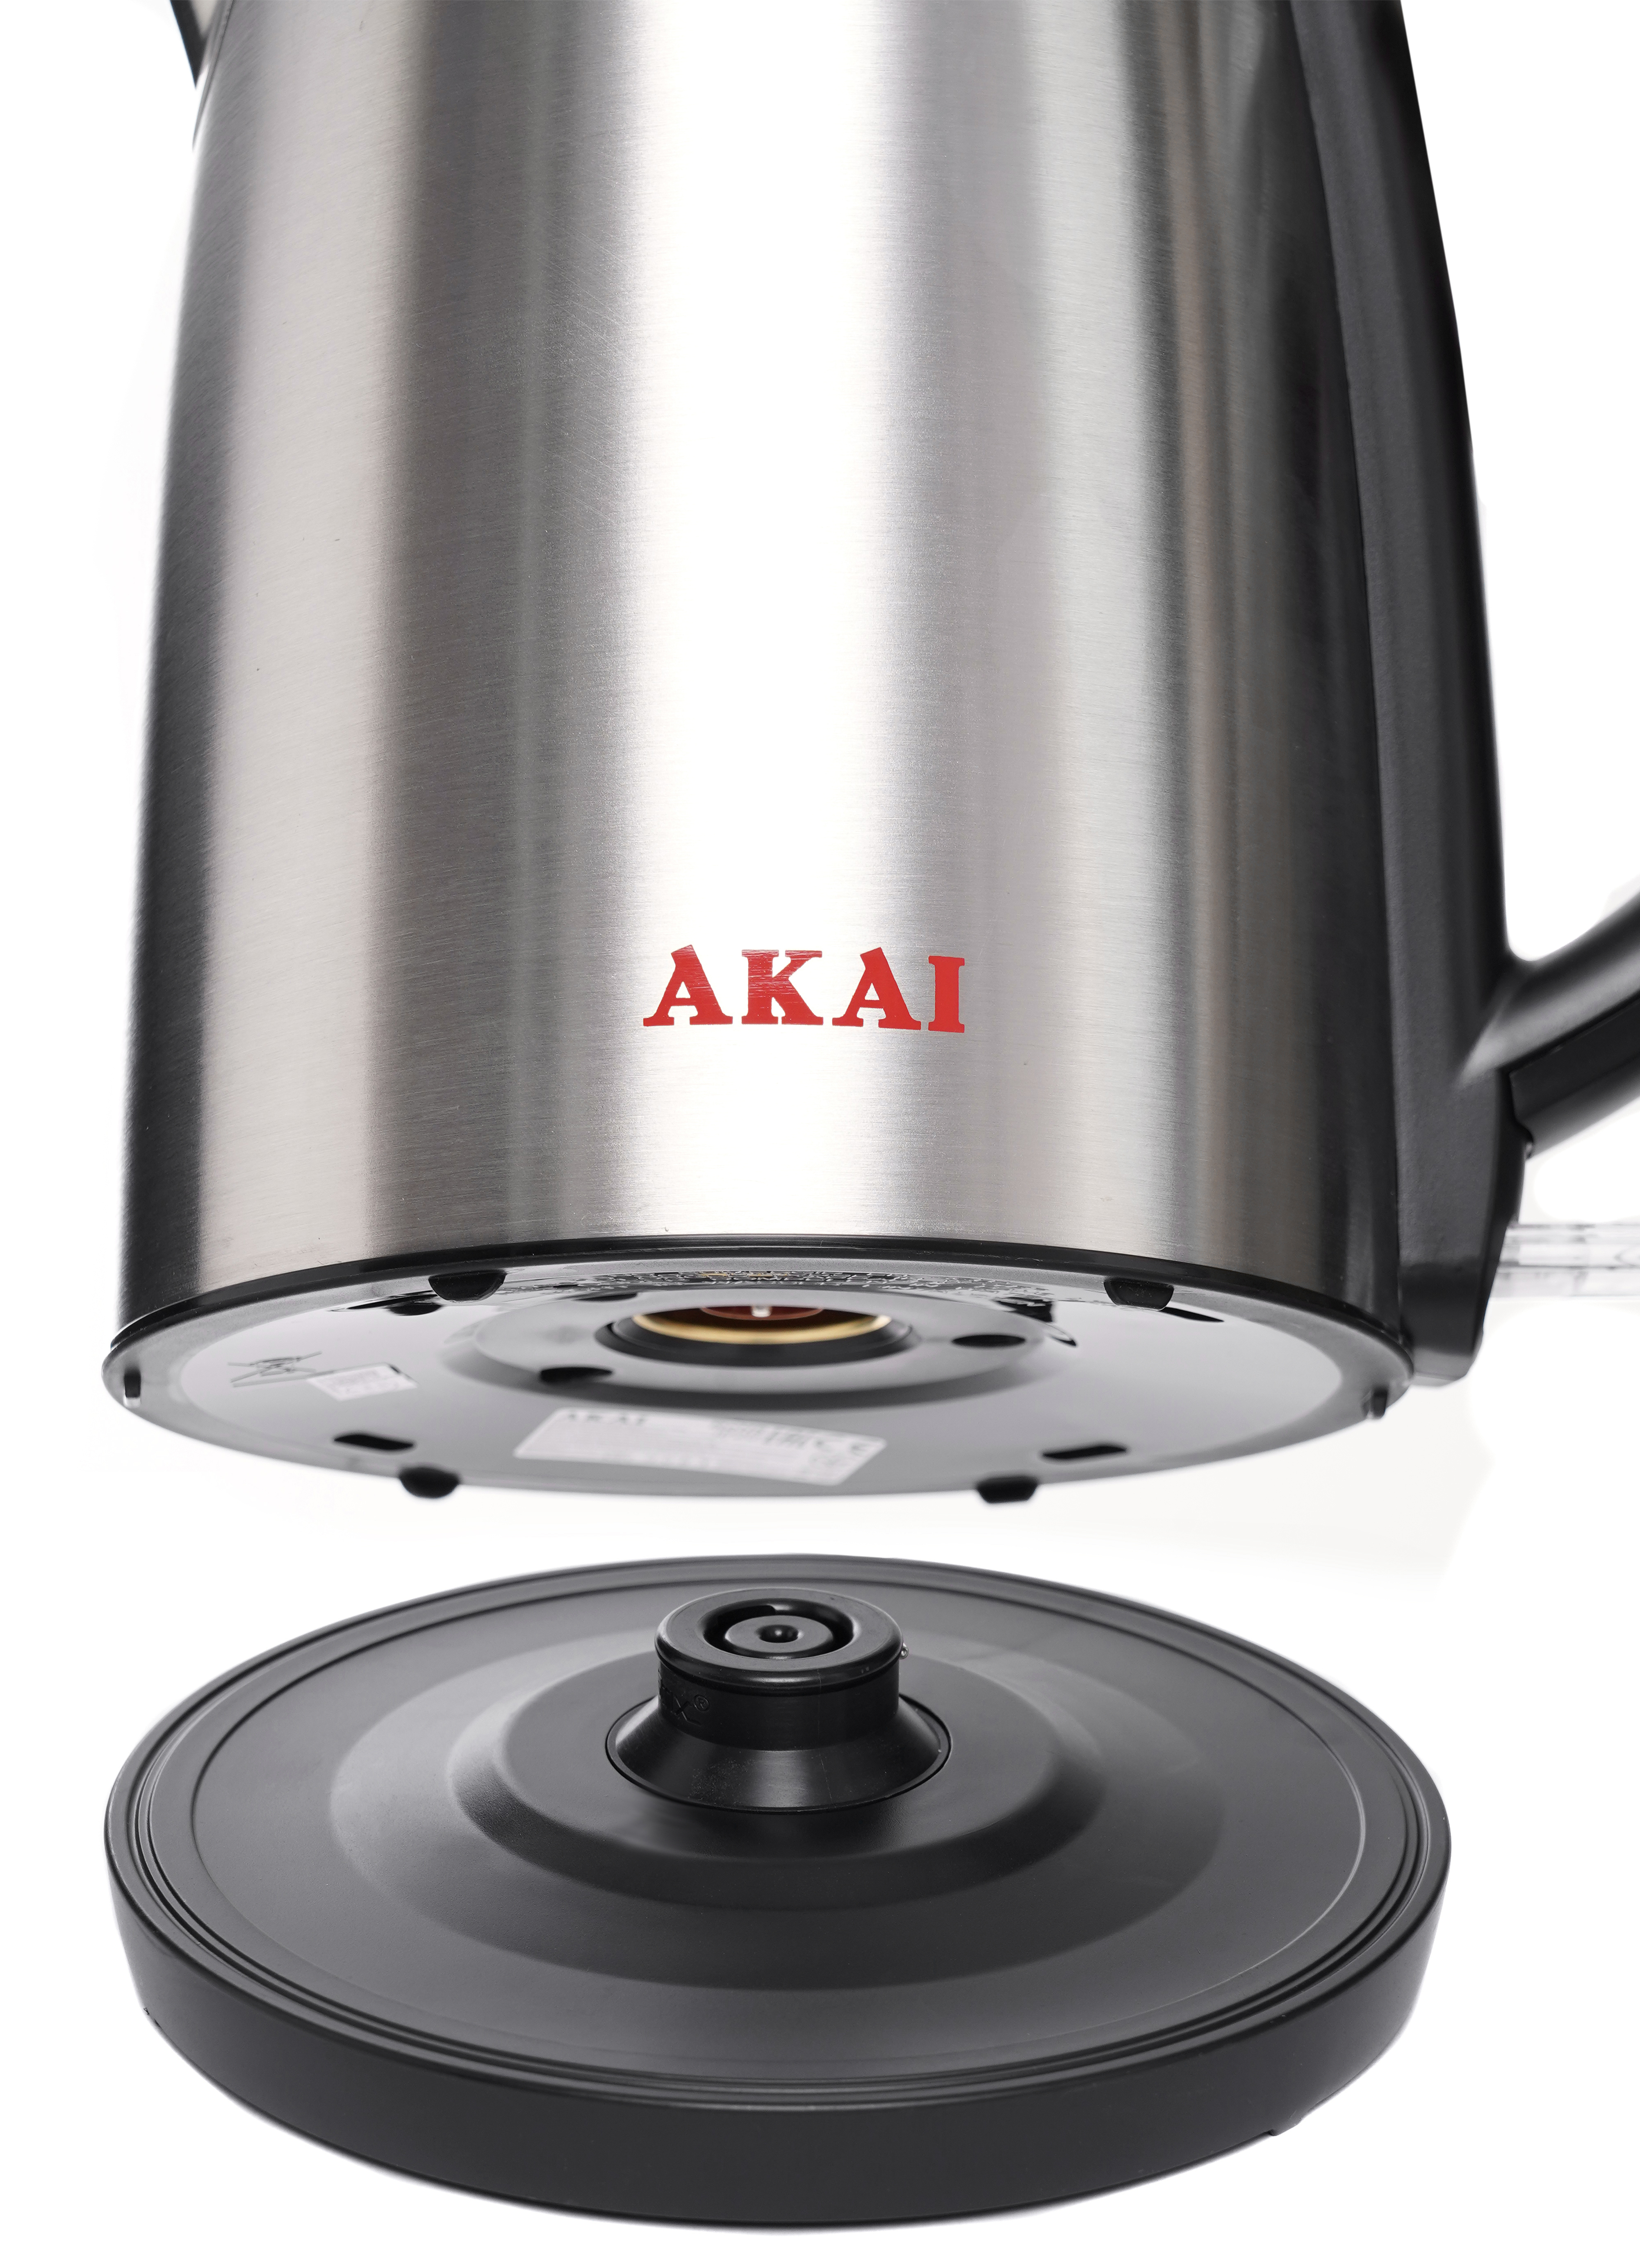 Електрочайник Akai AK5545 характеристики - фотографія 7